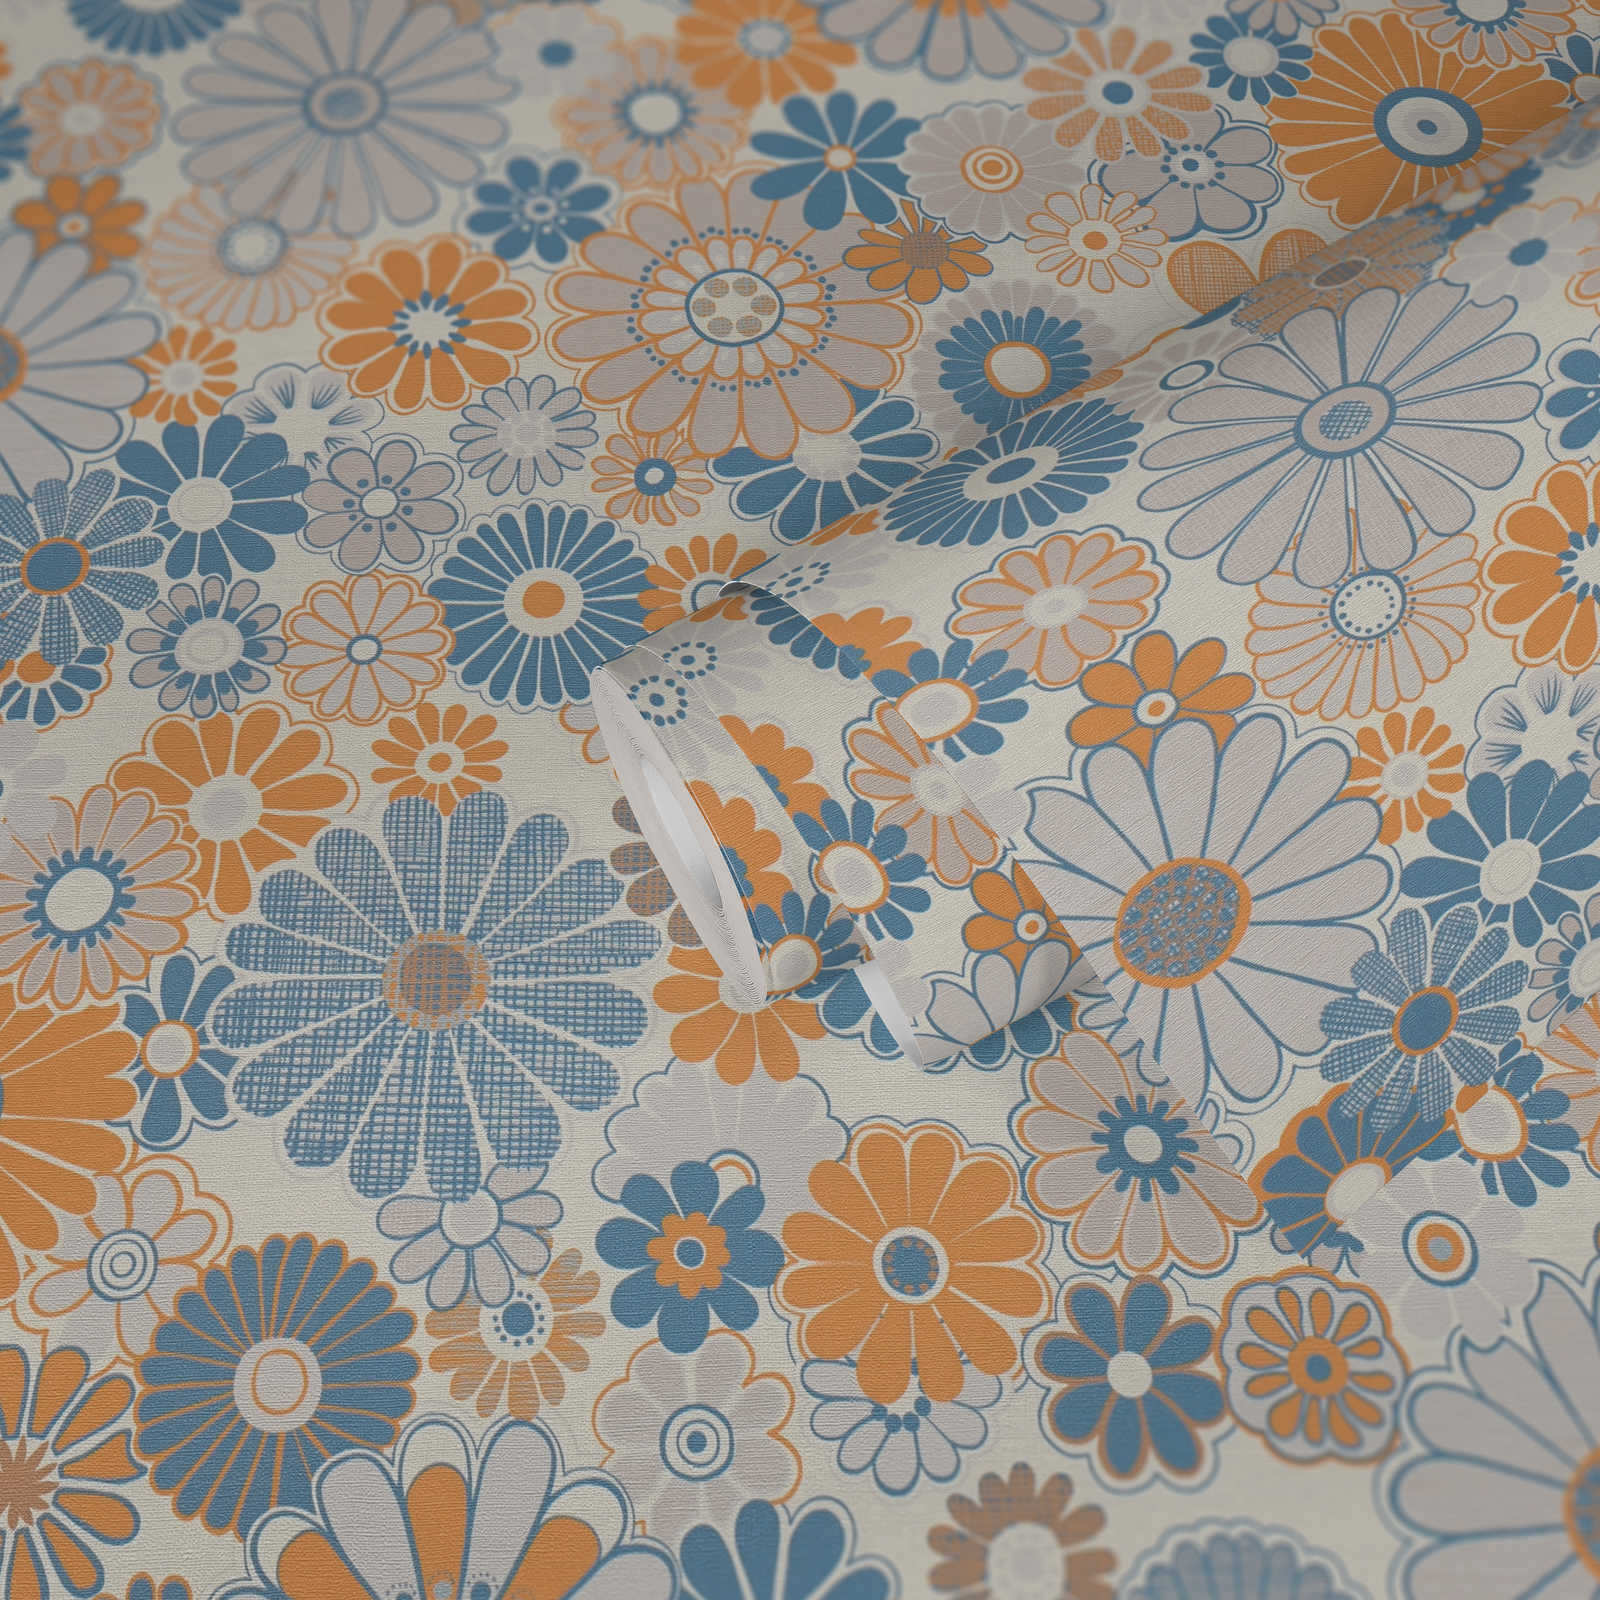             Vliestapete mit floraler Bemusterung im Retro Stil – Blau, Orange, Grau
        